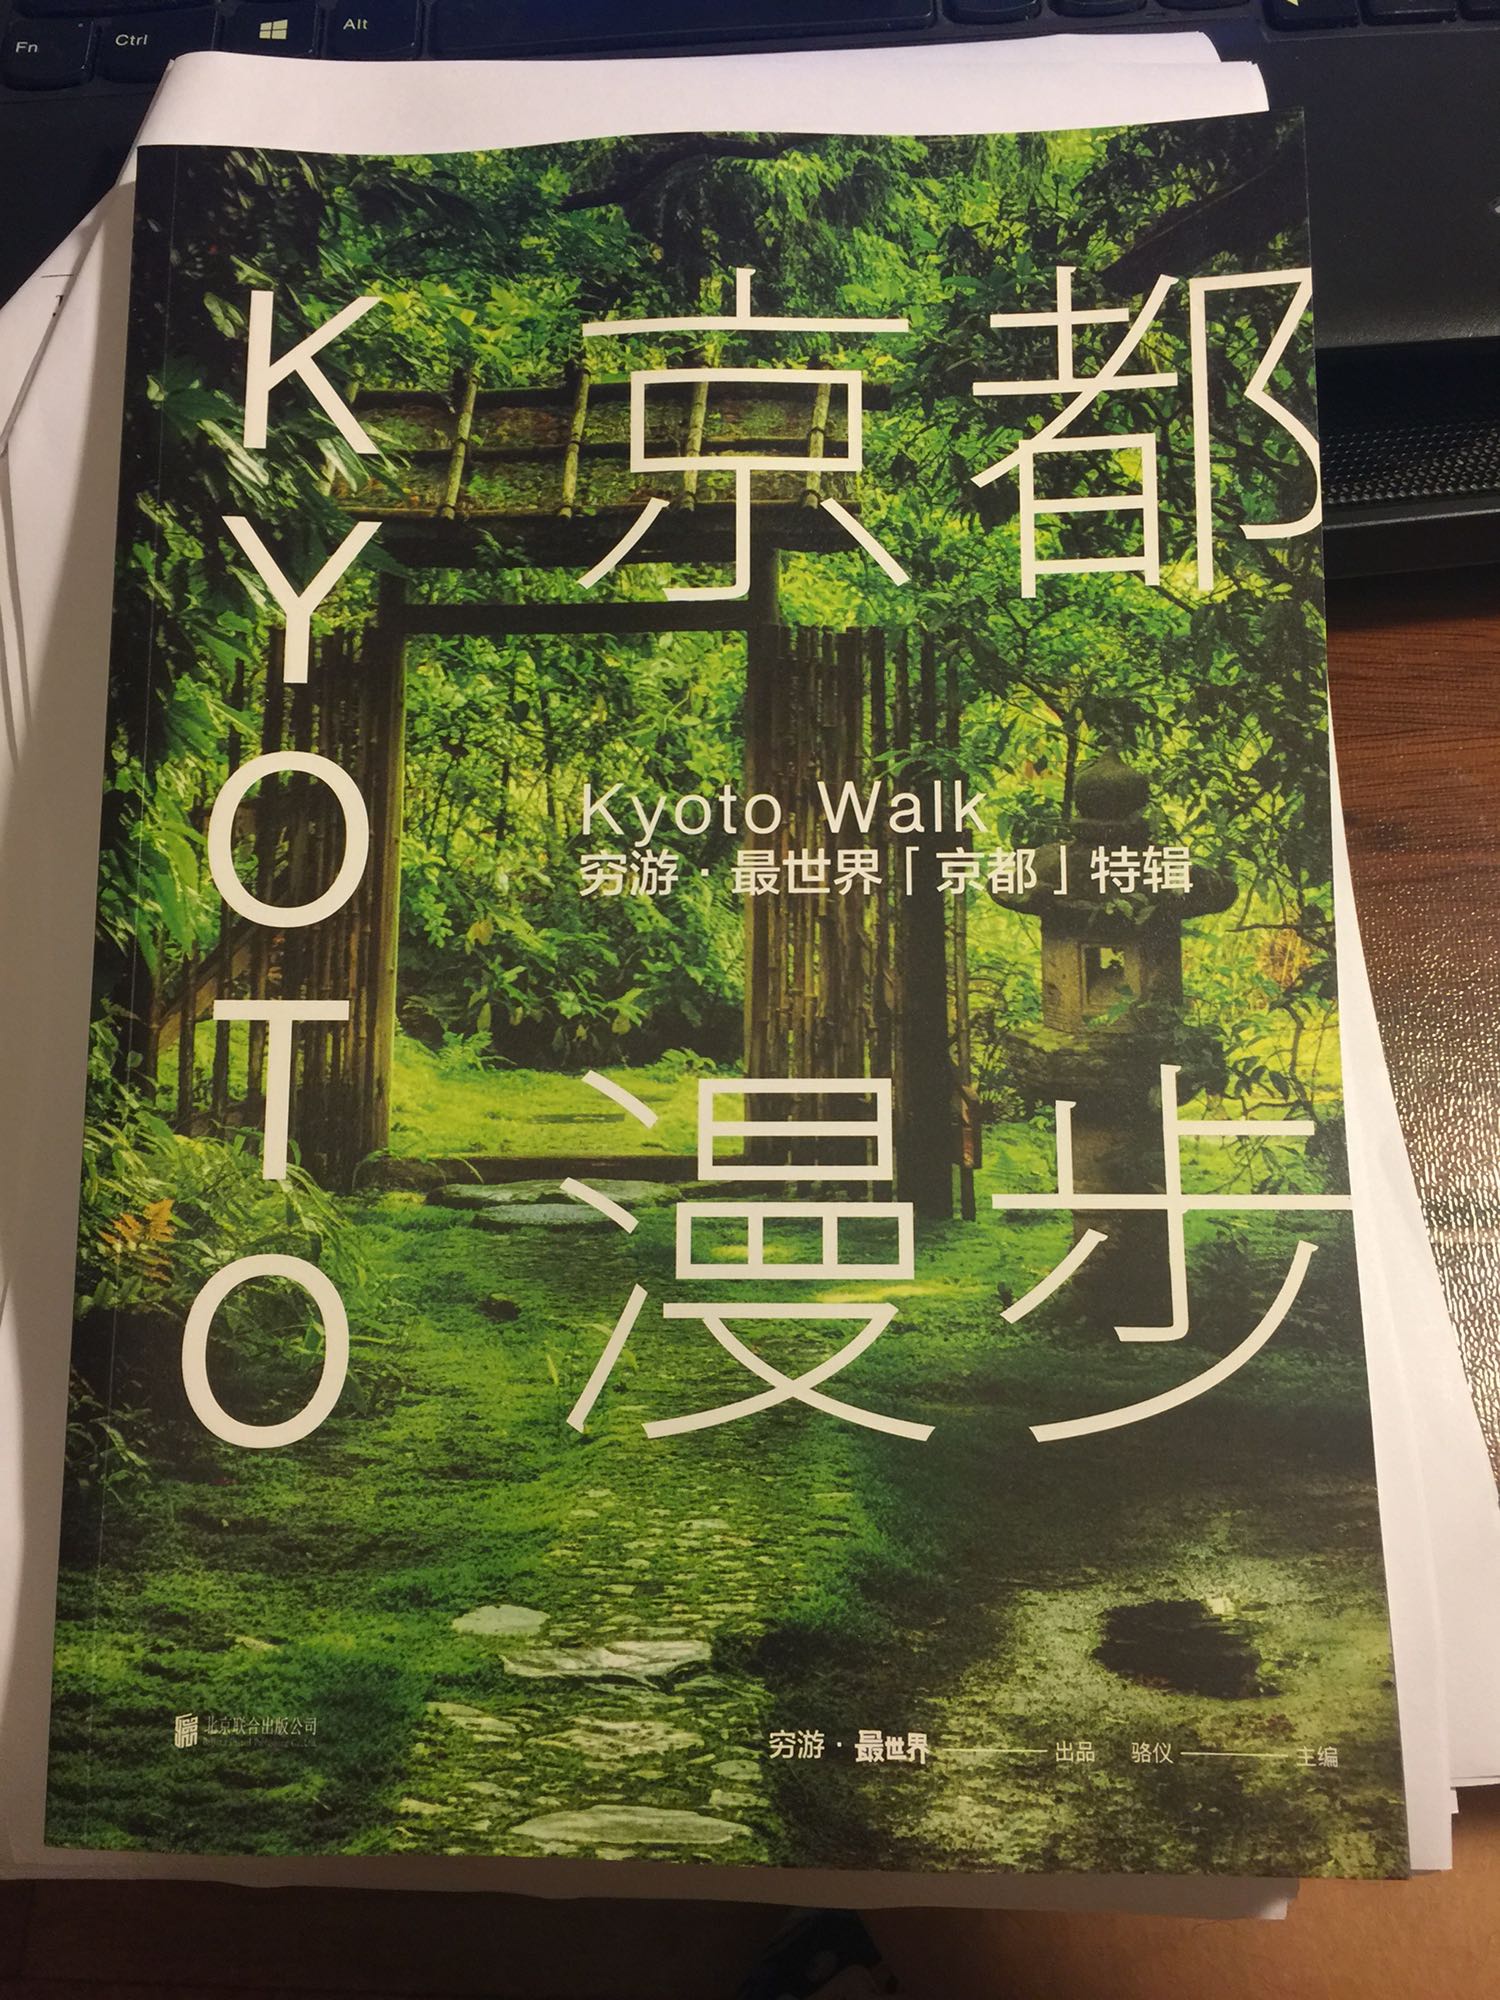 这书不错的，mook的感觉，对京都的景点和生活也有很详细的介绍。